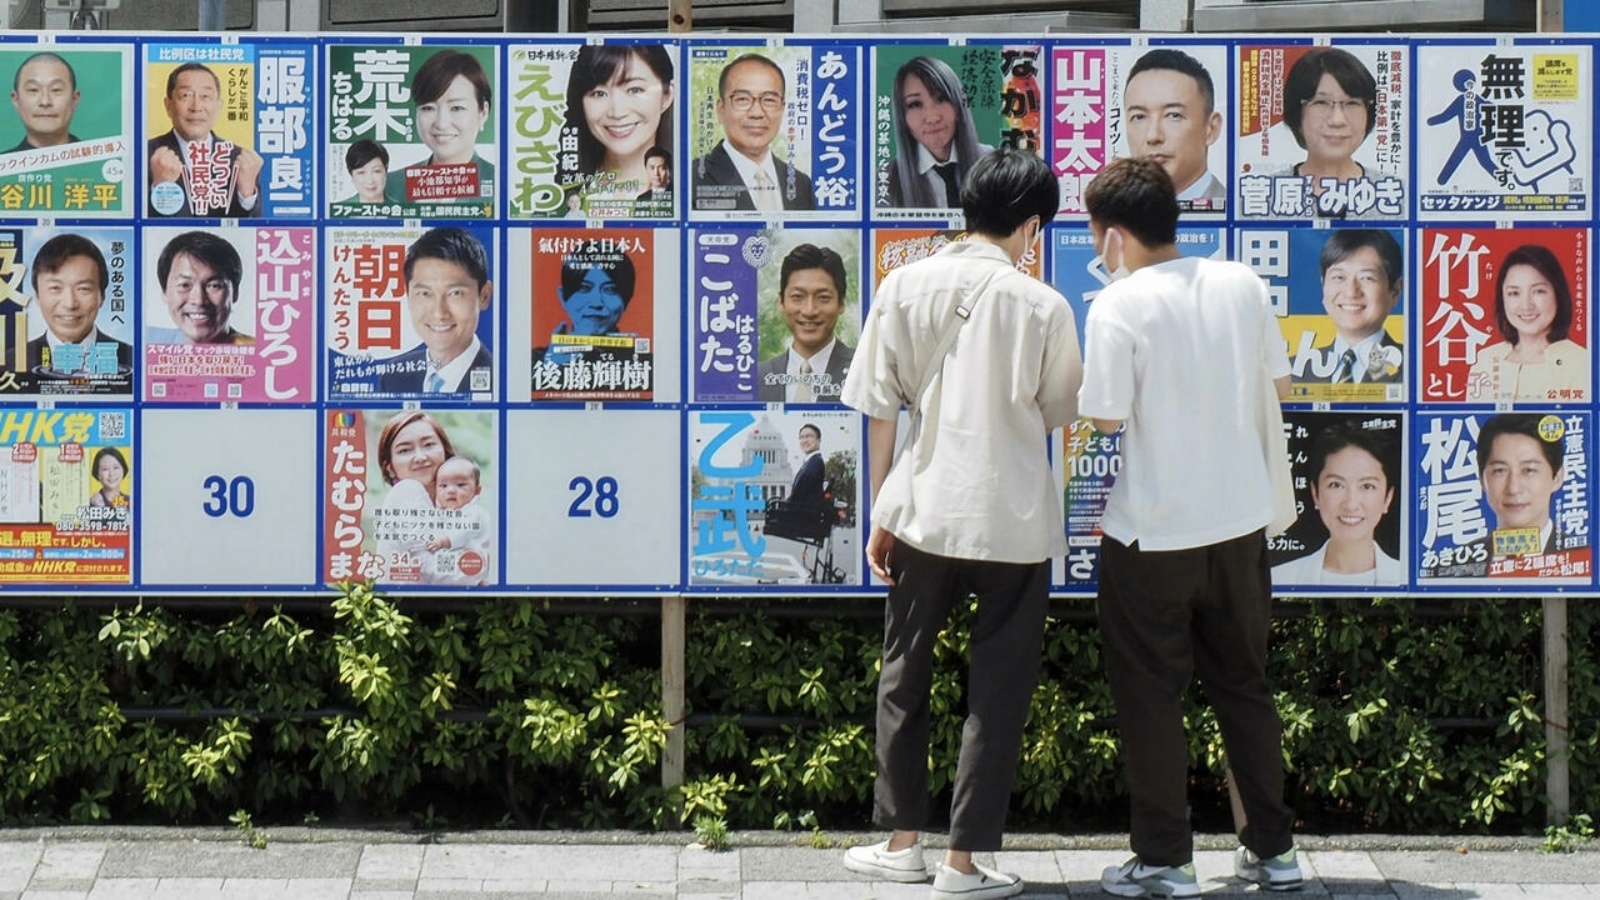 أشخاص ينظرون إلى ملصقات الحملة الانتخابية لانتخابات مجلس الشيوخ في اليابان في 10 يوليو 2022